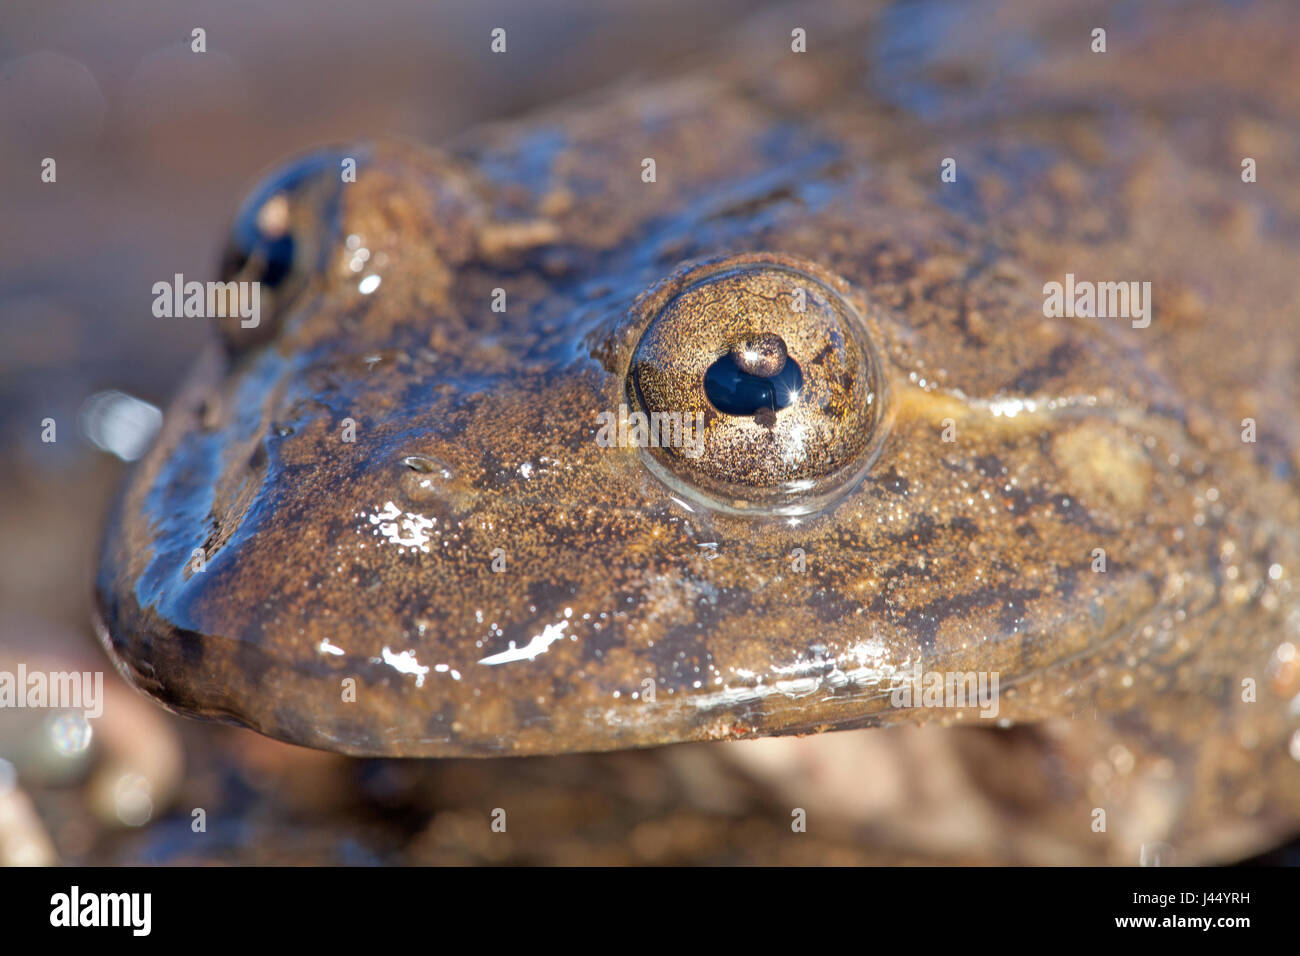 Foto eines Maluti Fluss Frosch, hat es eine Padiglione in seinem Auge, das schützt die Augen vor UV-Strahlung und ist eine Adaption für das Leben auf großen Höhen Stockfoto